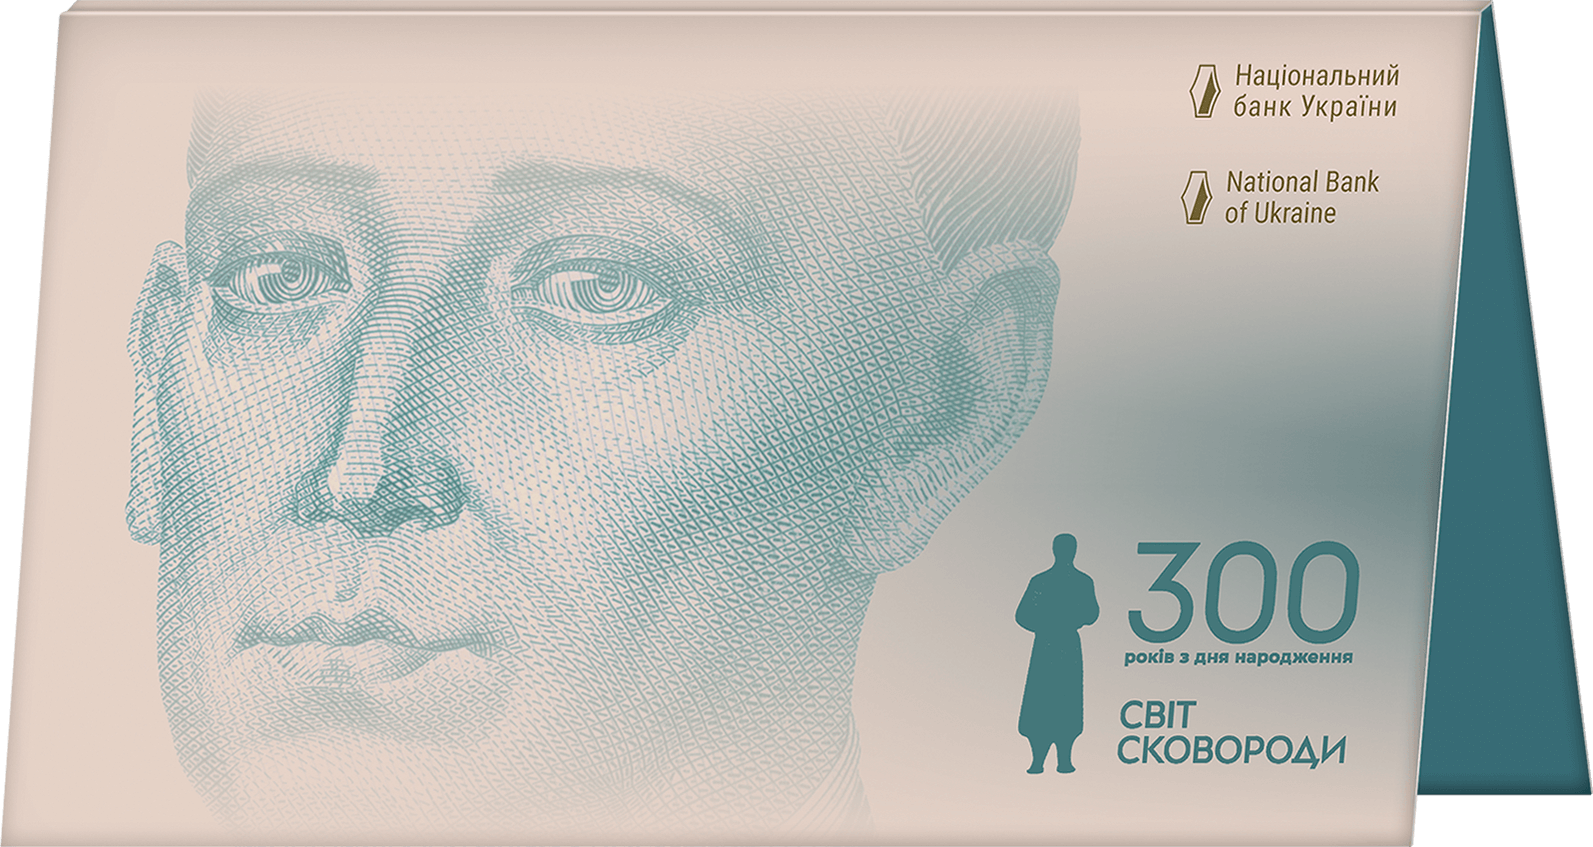 Пам`ятна банкнота номіналом 500 гривень зразка 2015 року до 300-річчя від дня народження Григорія Сковороди (у сувенірній упаковці)
 (аверс)